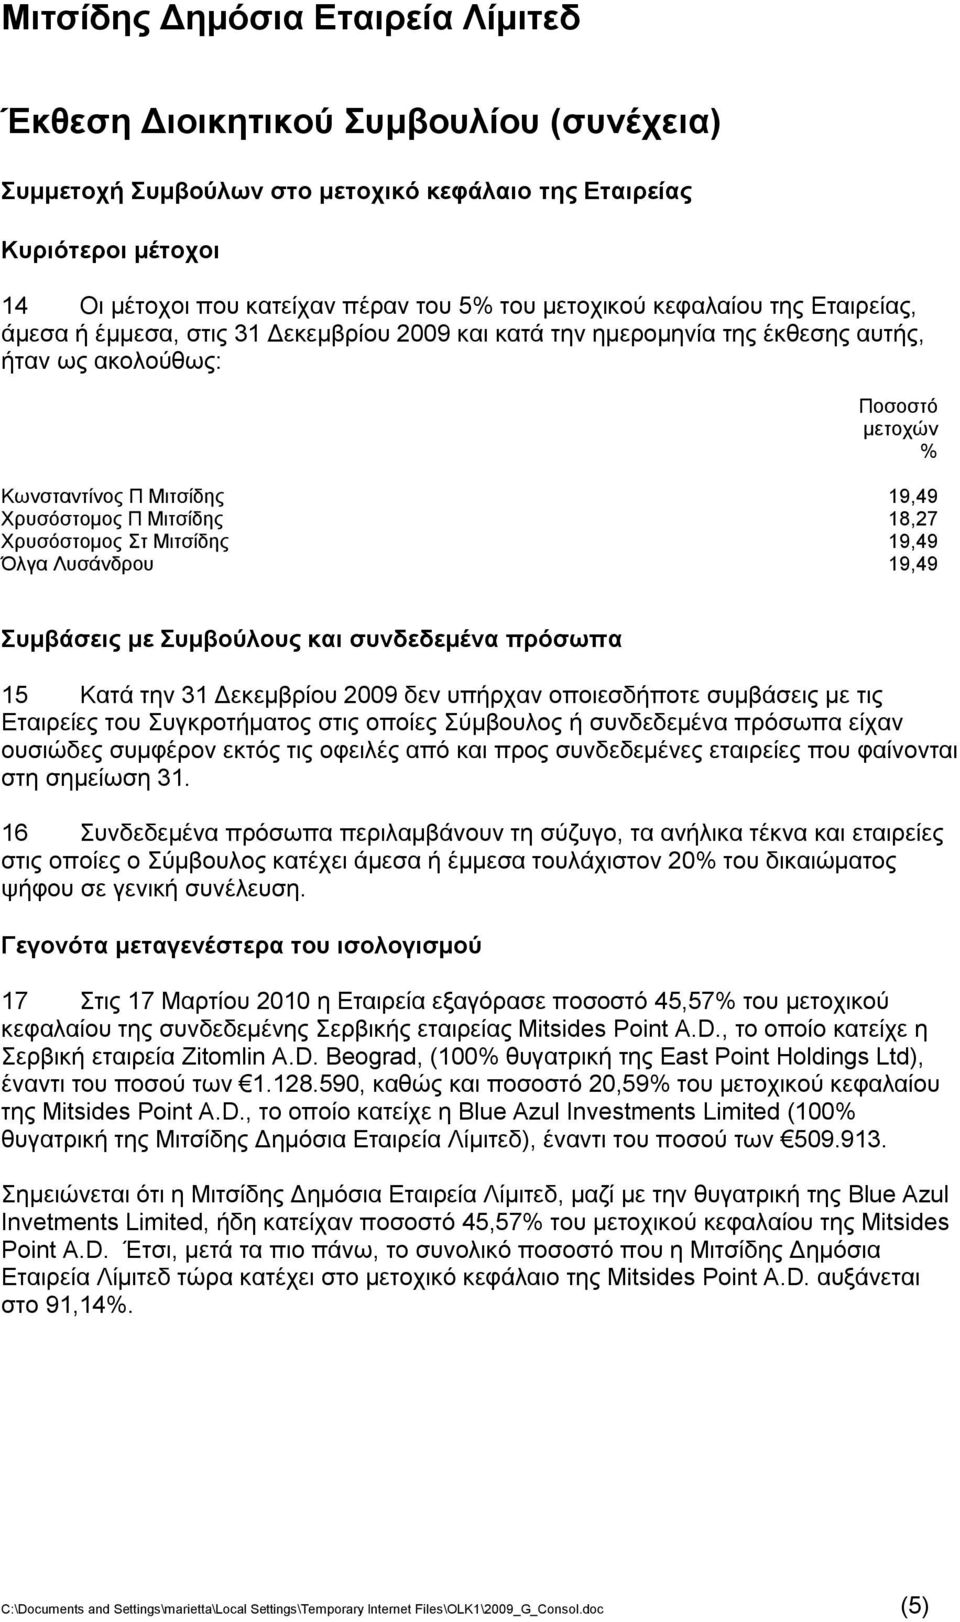 Μιτσίδης 19,49 Όλγα Λυσάνδρου 19,49 Συμβάσεις με Συμβούλους και συνδεδεμένα πρόσωπα 15 Κατά την 31 Δεκεμβρίου 2009 δεν υπήρχαν οποιεσδήποτε συμβάσεις με τις Εταιρείες του Συγκροτήματος στις οποίες